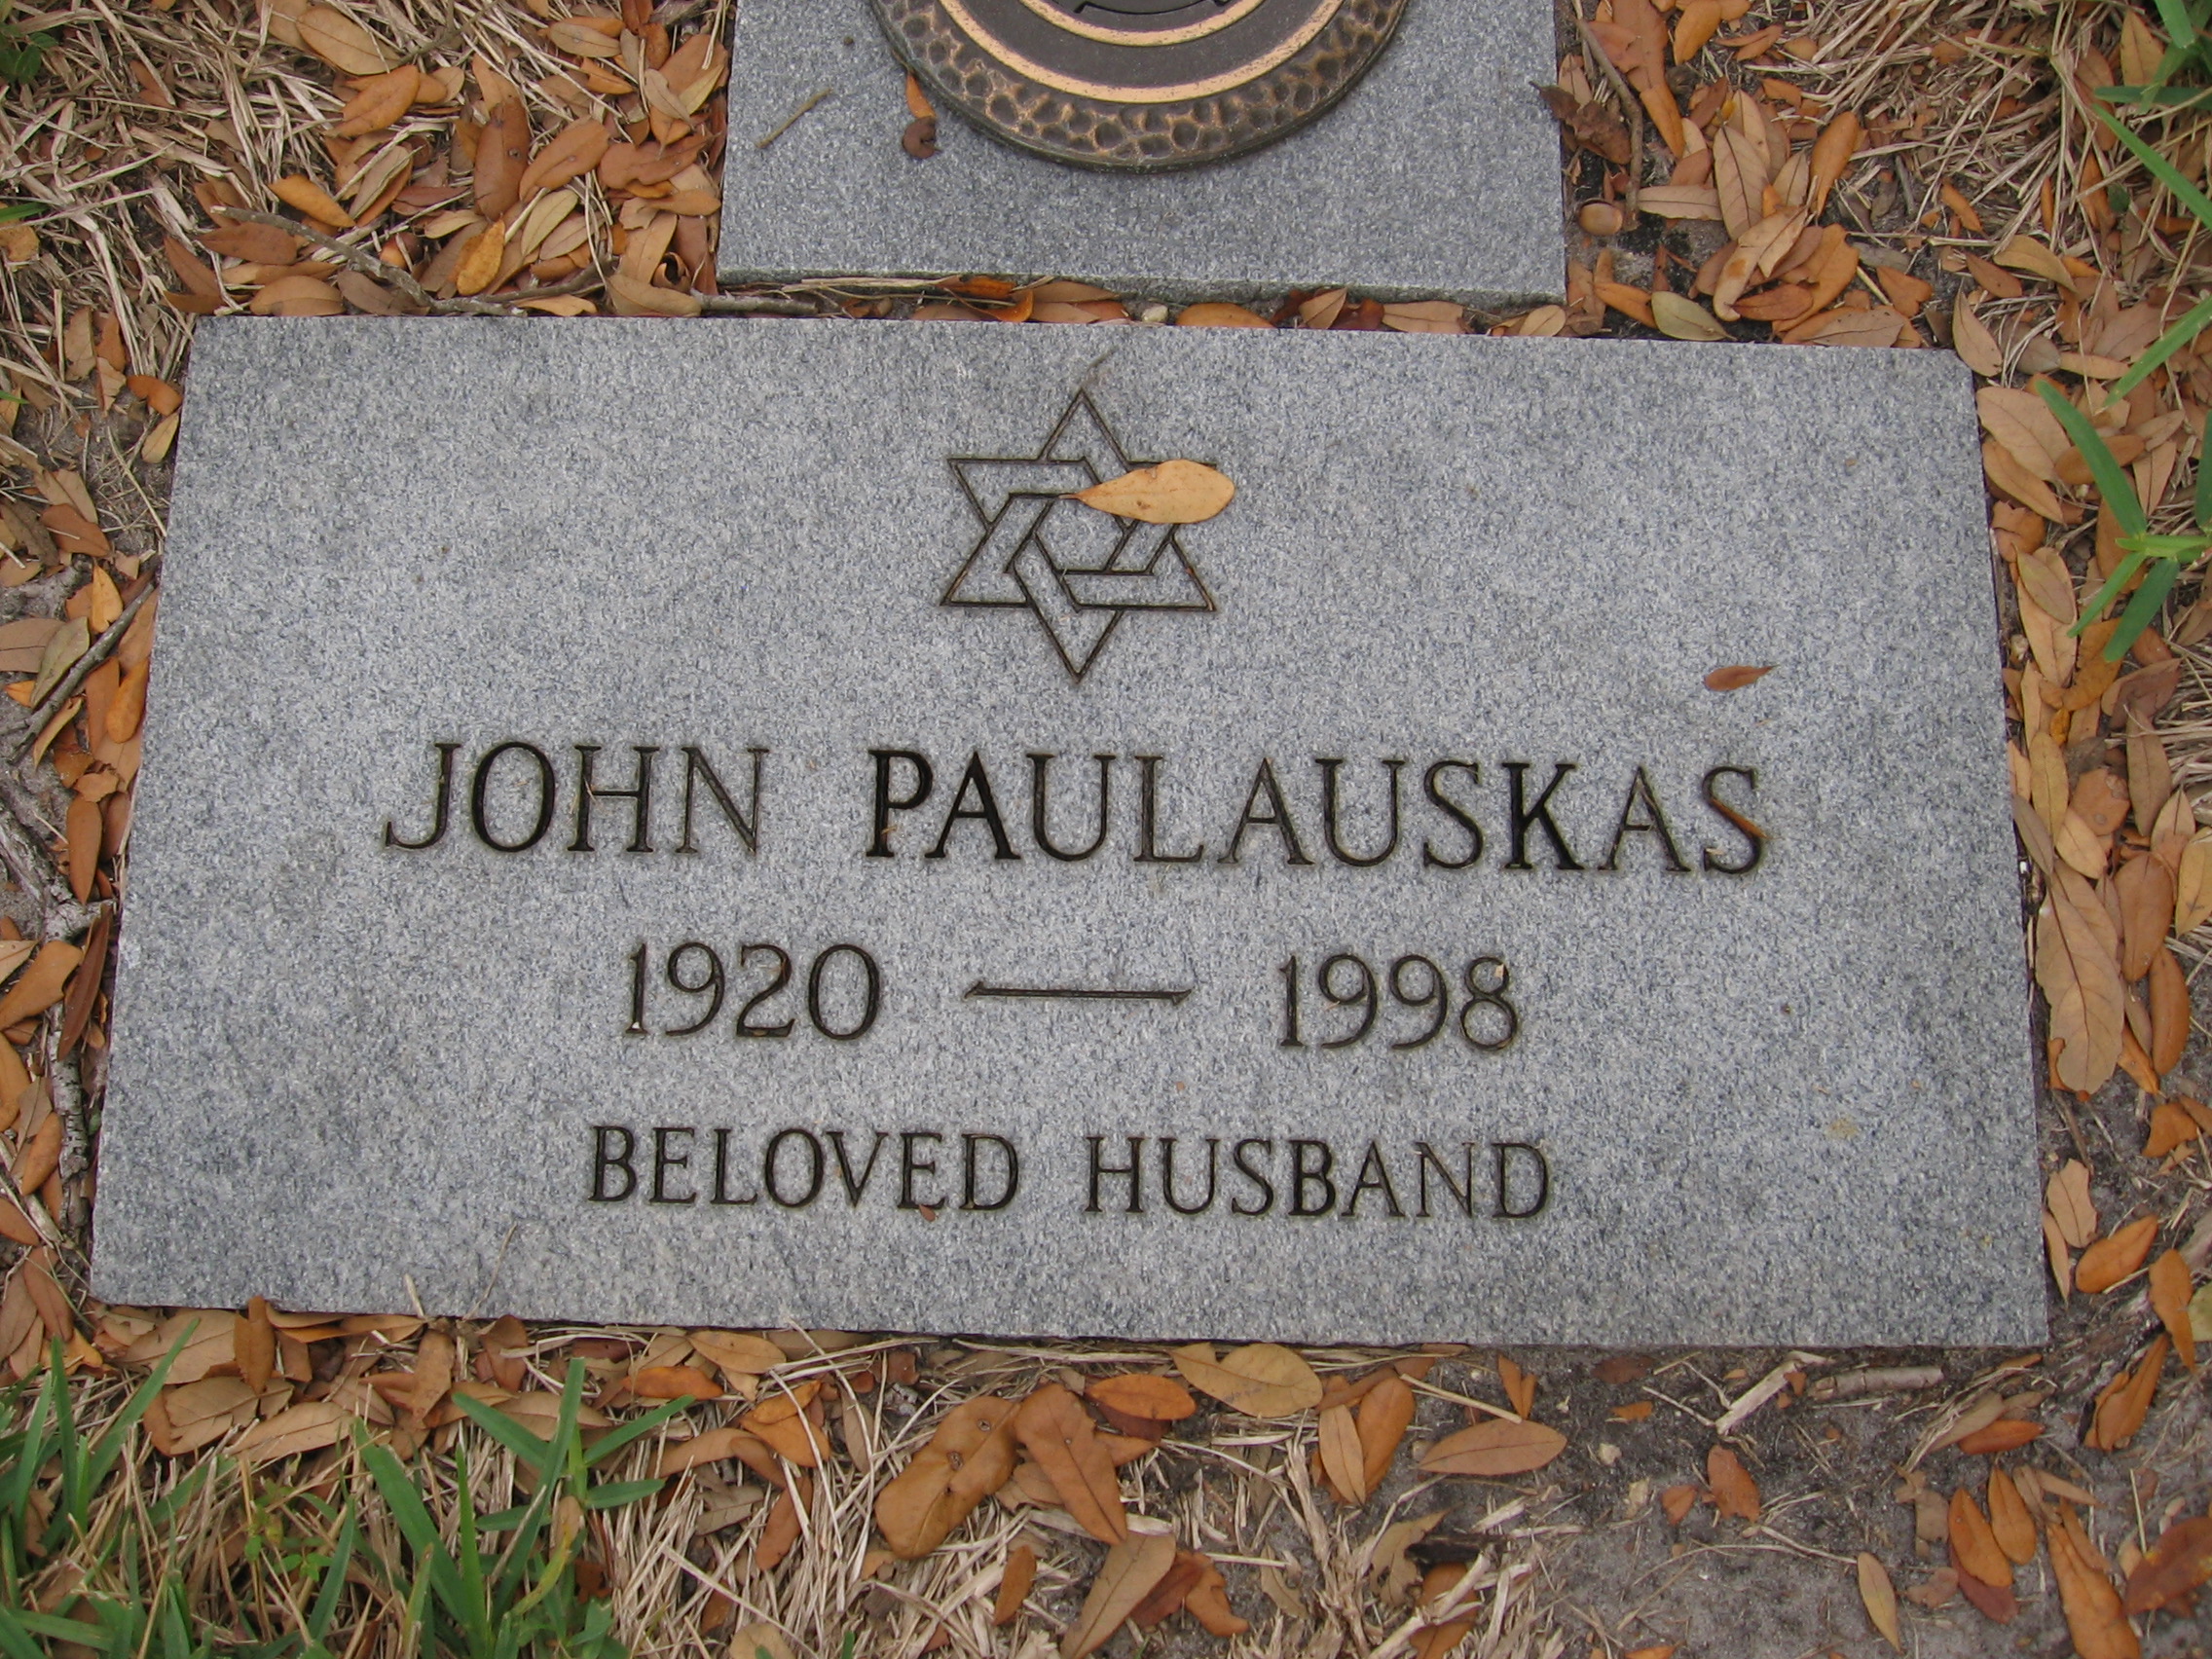 John Paulauskas